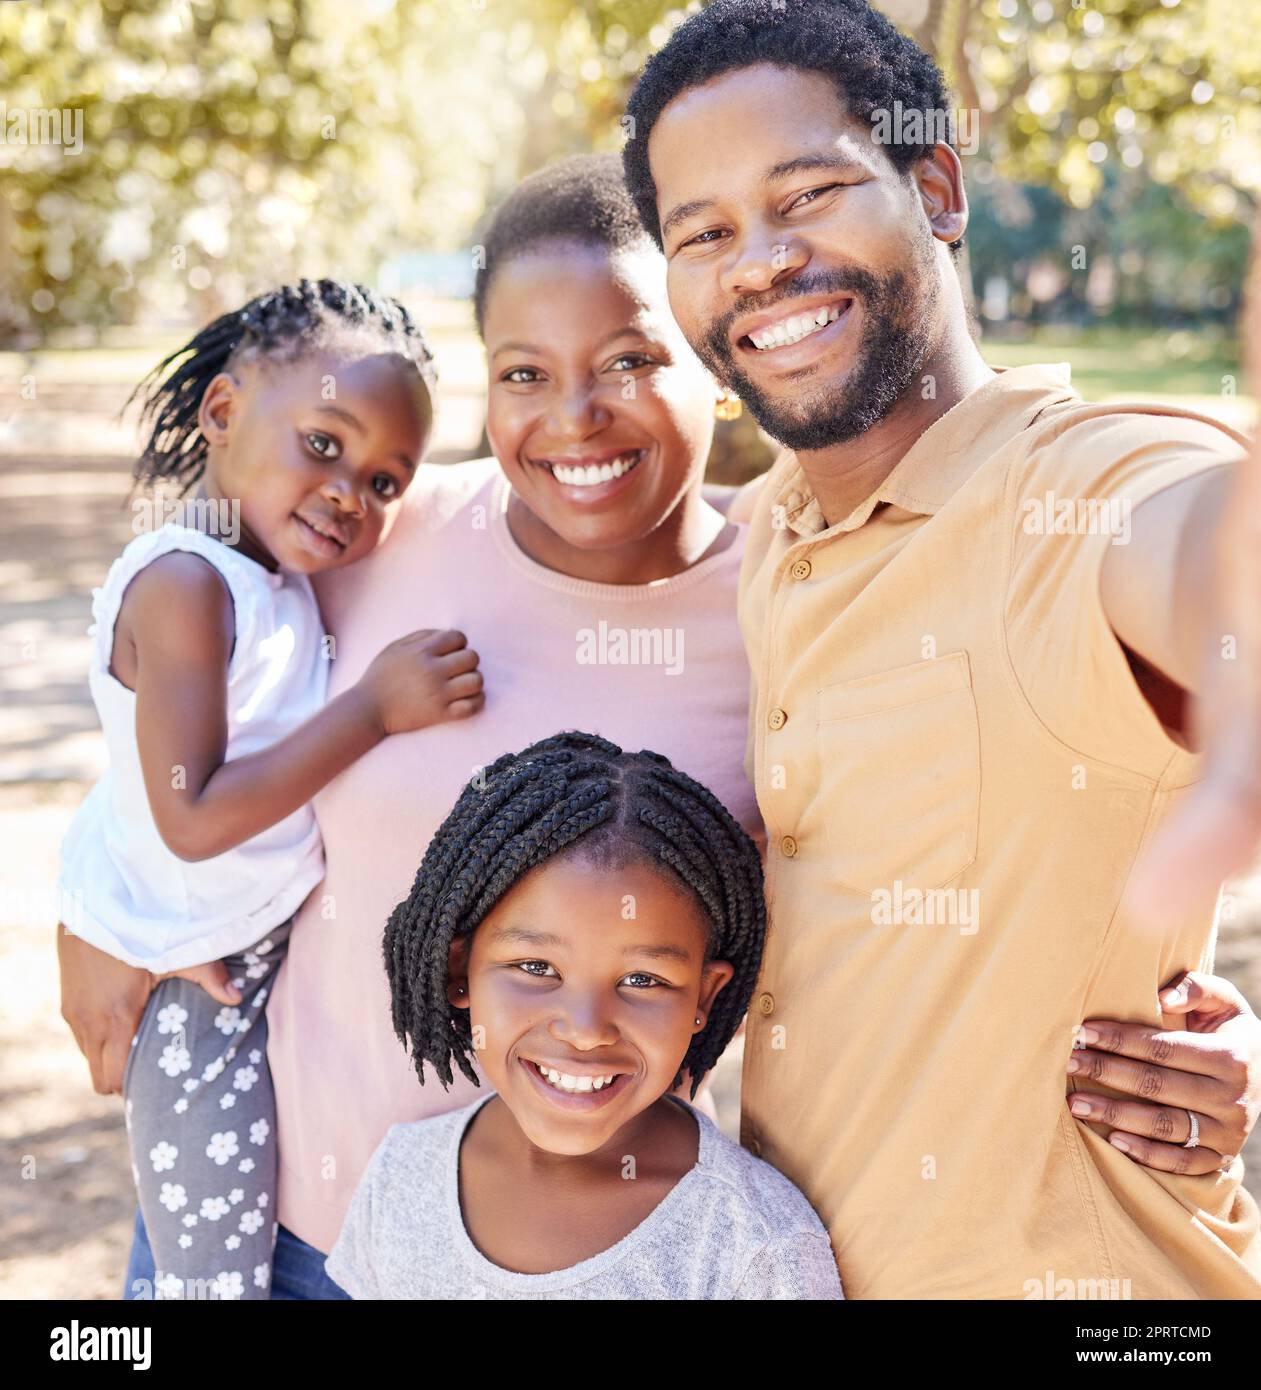 Familia negra feliz tomar un selfie en la naturaleza en un viaje de vacaciones juntos disfrutar de tiempo de calidad en un parque infantil. Sonríe, felicidad y a las chicas africanas les encanta tomar fotos con su madre y su padre Foto de stock